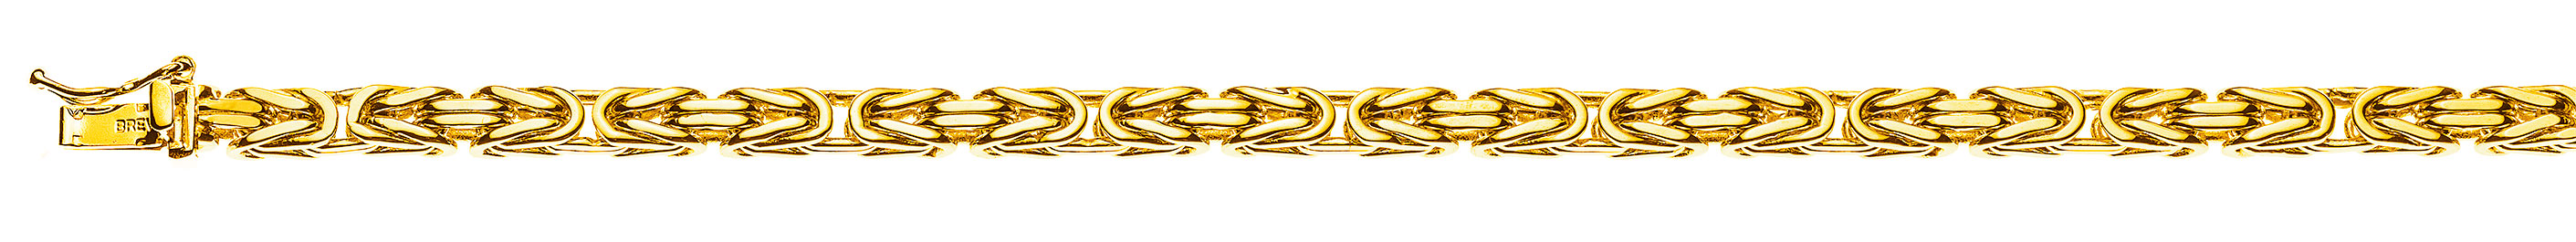 AURONOS Prestige Collier en or jaune 18K chaîne royale 45cm 4mm